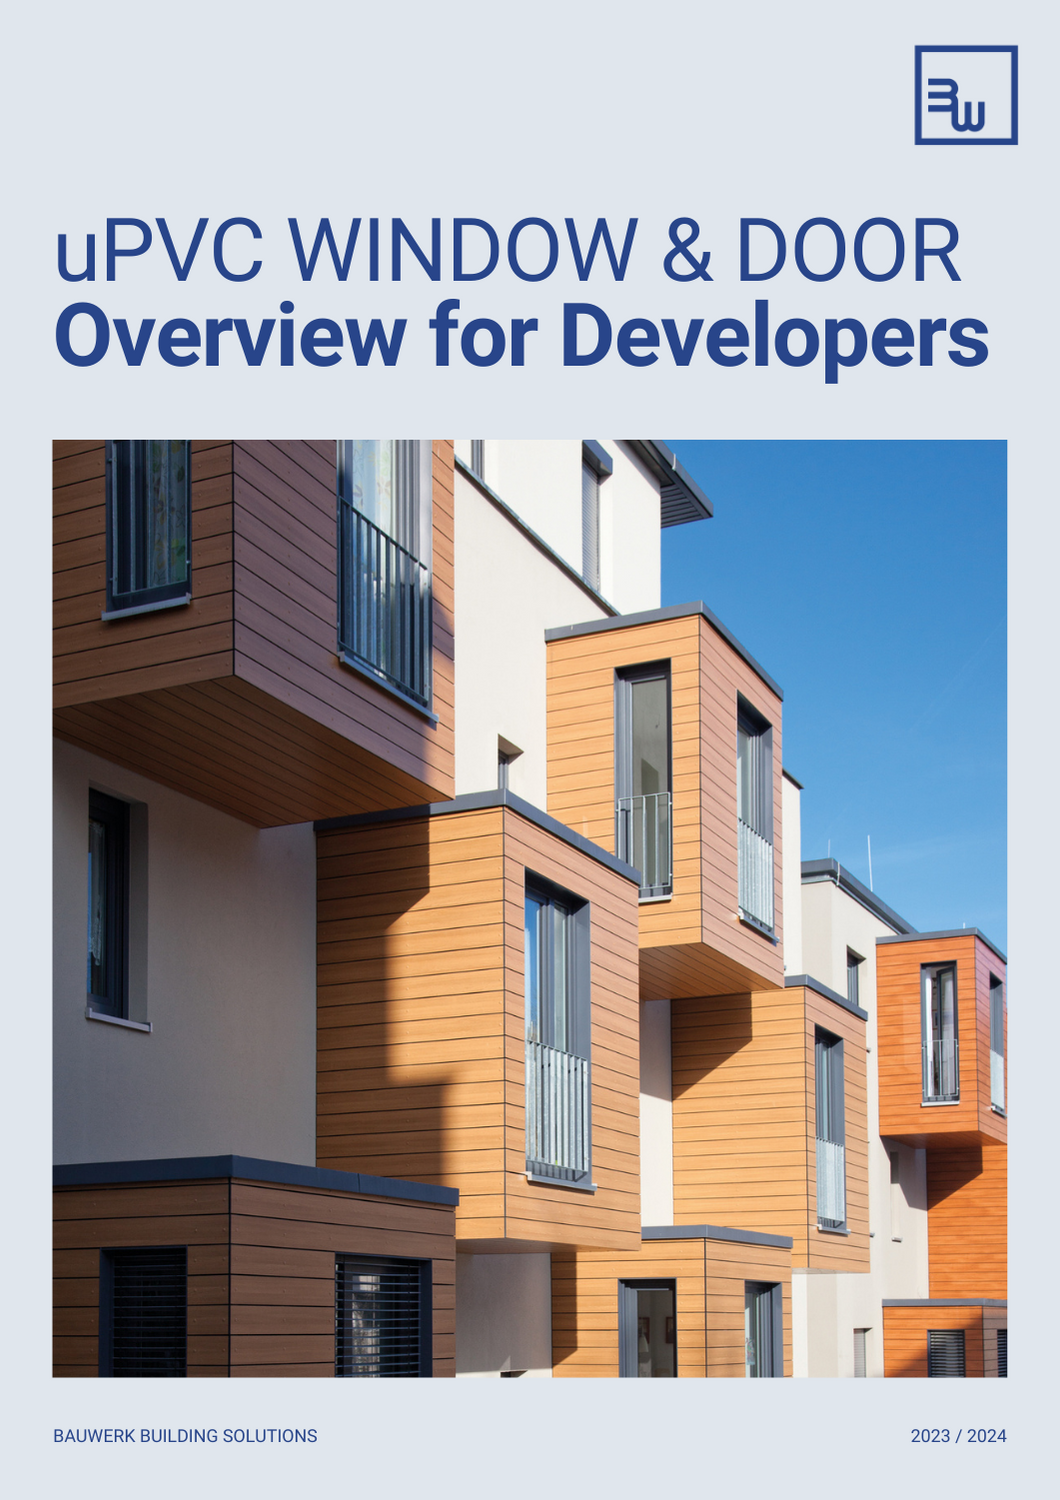 Bauwerk Window & Door Brochure - Developers (1)